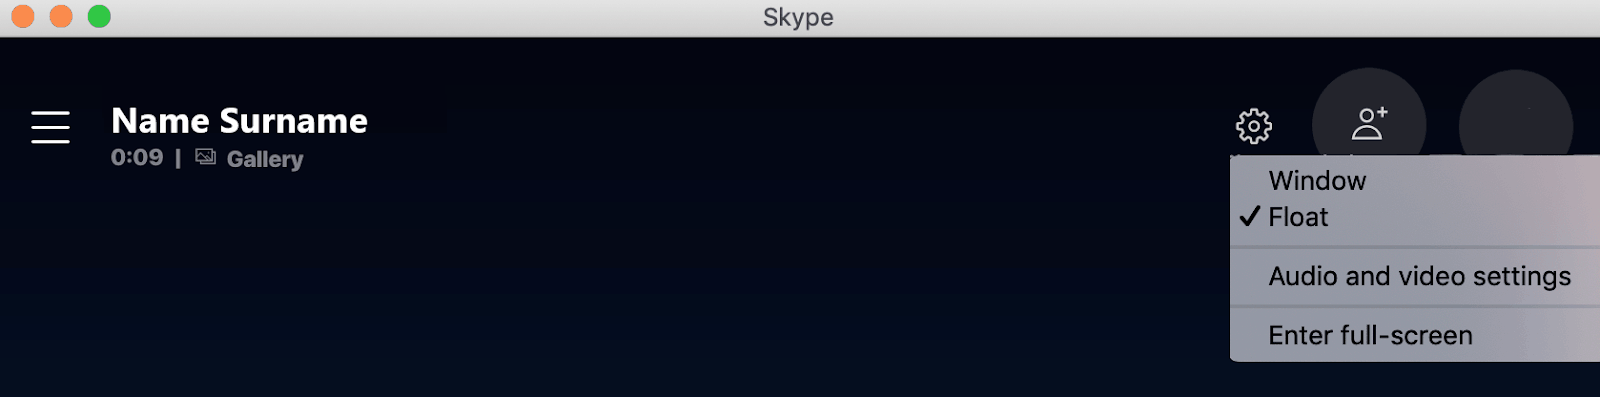 do pop up window in skype for mac